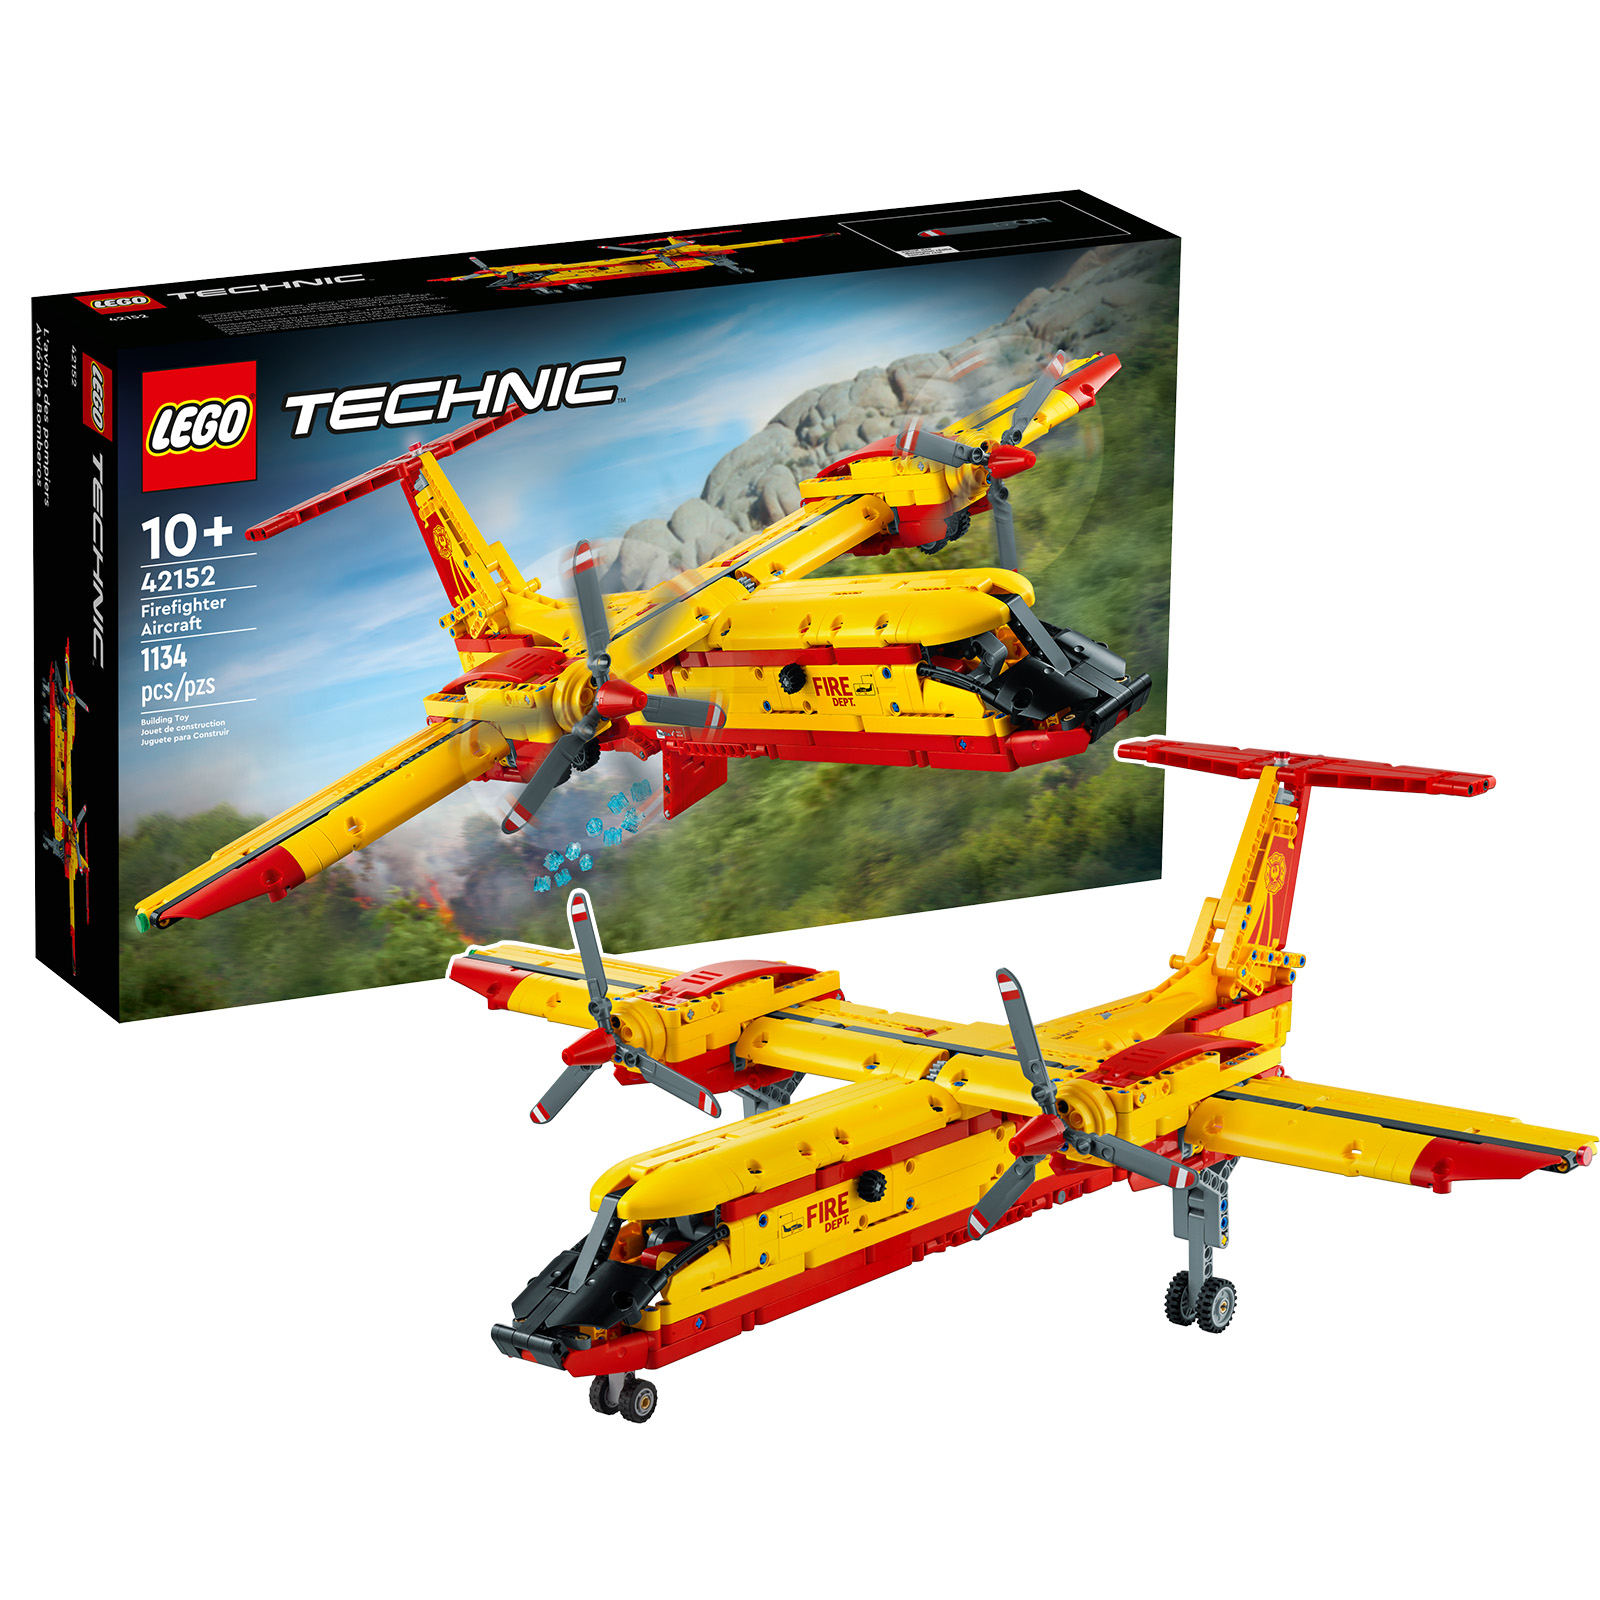 Í LEGO búðinni: LEGO Technic 42152 slökkviliðsflugvélasettið er í forpöntun